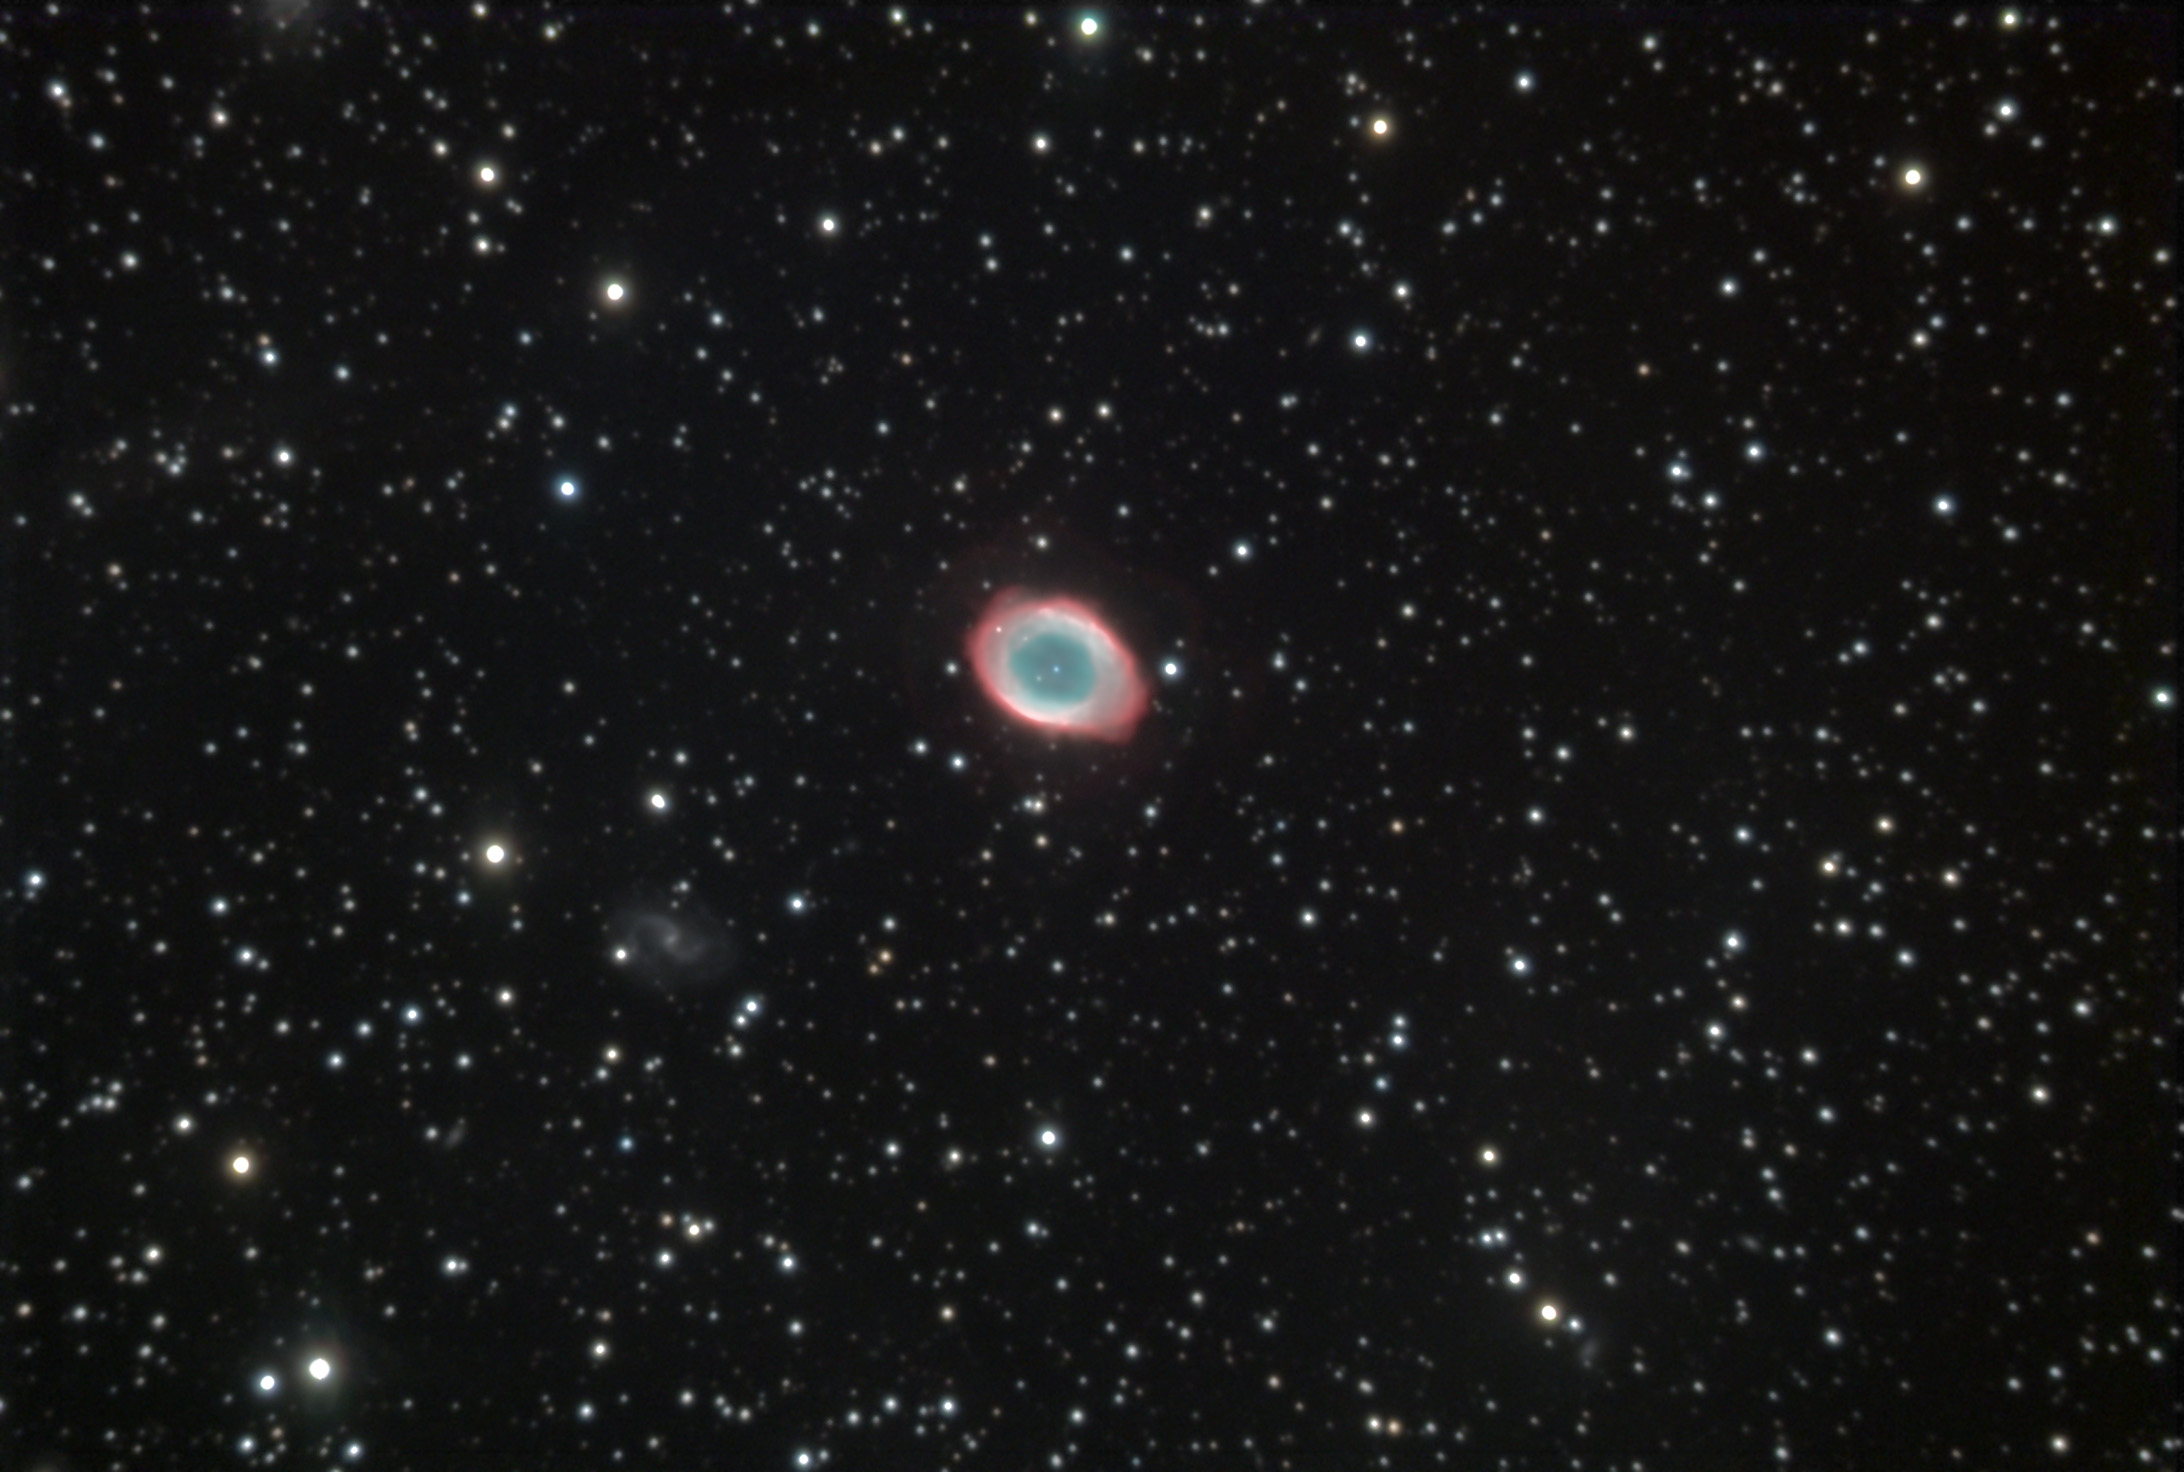 ring nebula hd